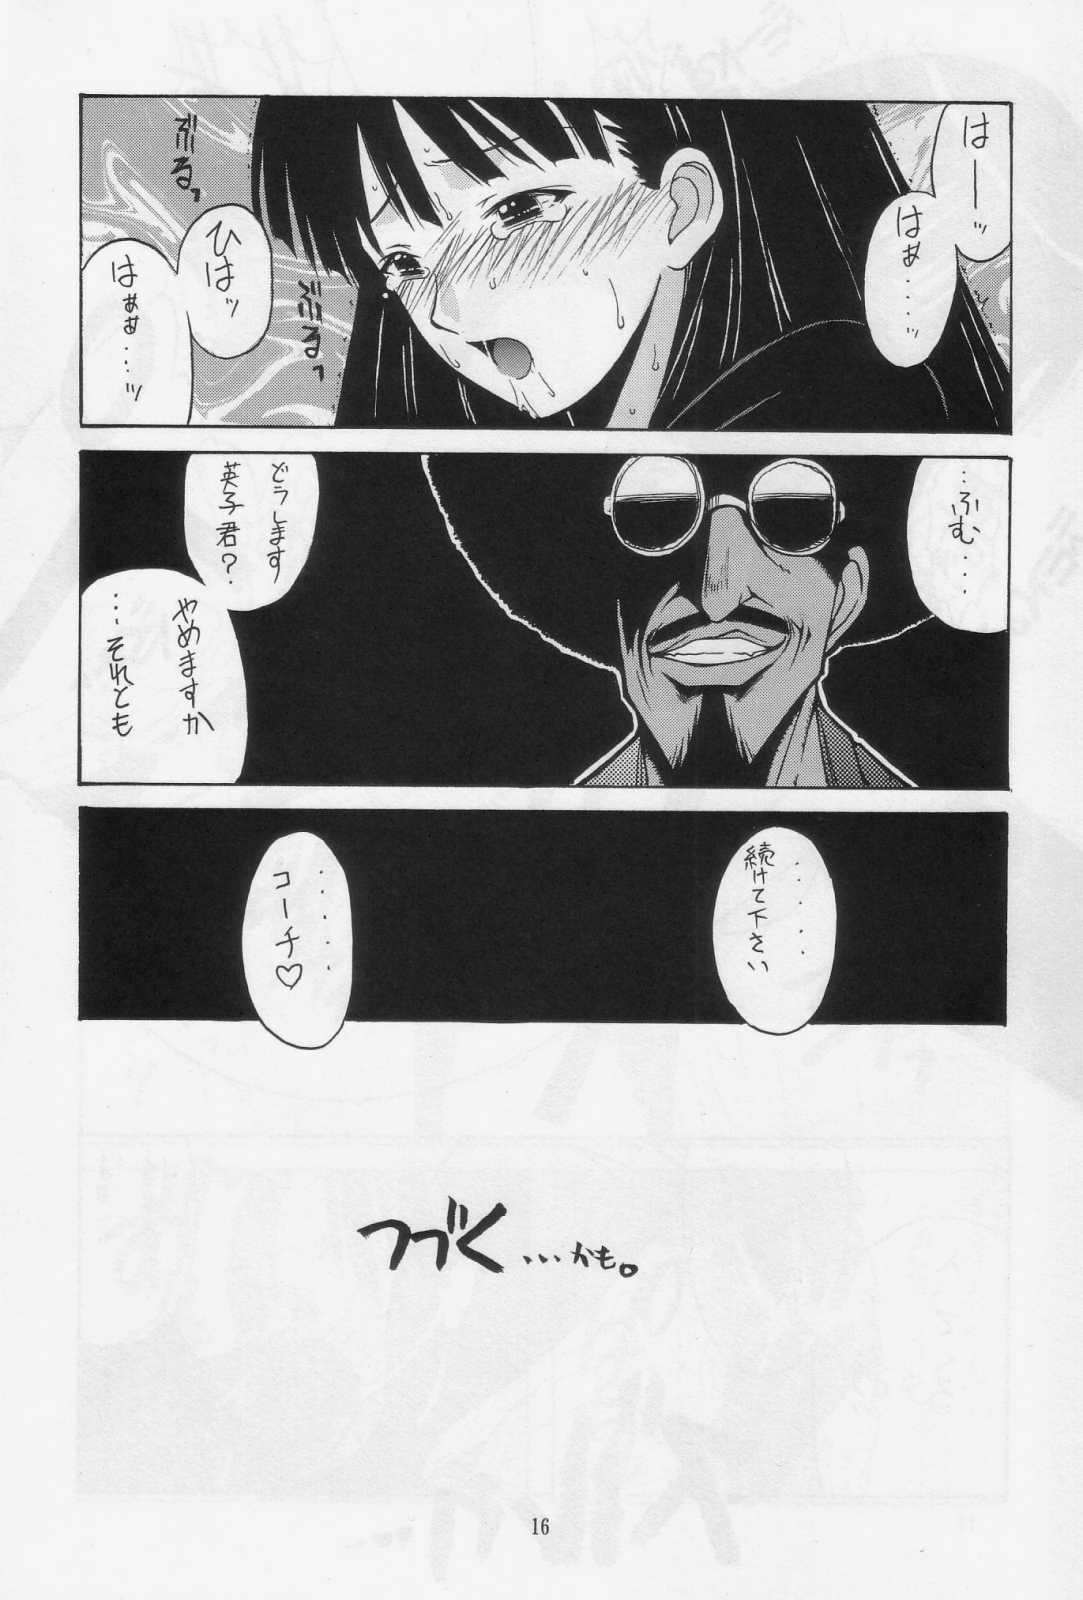 [BIG BOSS (Hontai Bai)] Mahora Dodge Bu Kuro Yuri (Mahou Sensei Negima!) [BIG・BOSS (本体売)] 麻帆良ドッジ部「黒百合」 (魔法先生ネギま!)